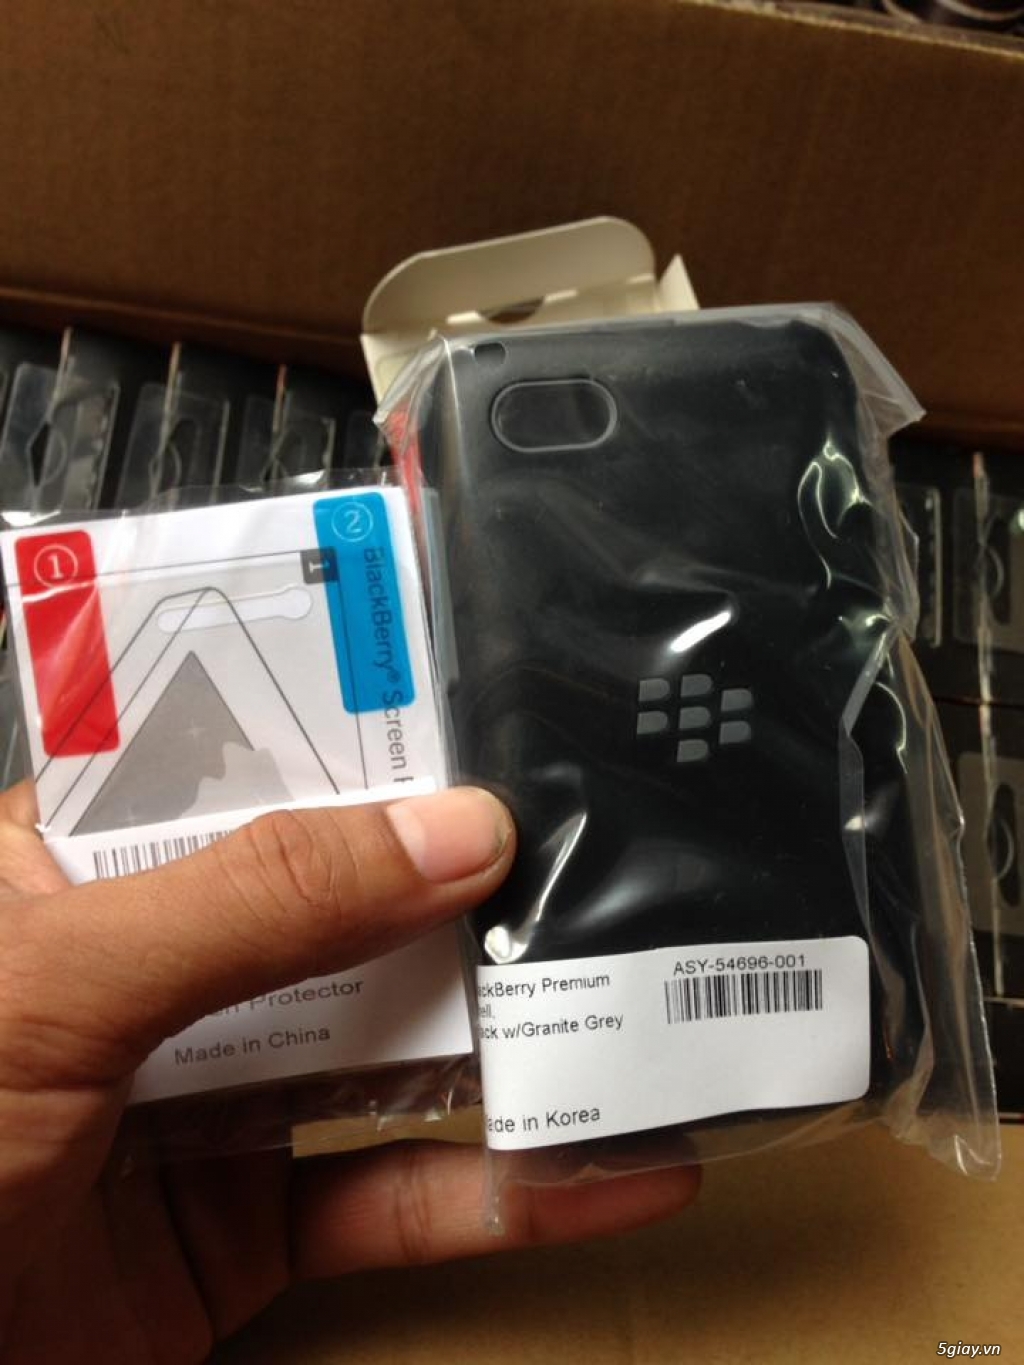 Premium Shell Blackberry Q5 new 100% nguyên hộp nhập khẩu thanh lý - 1